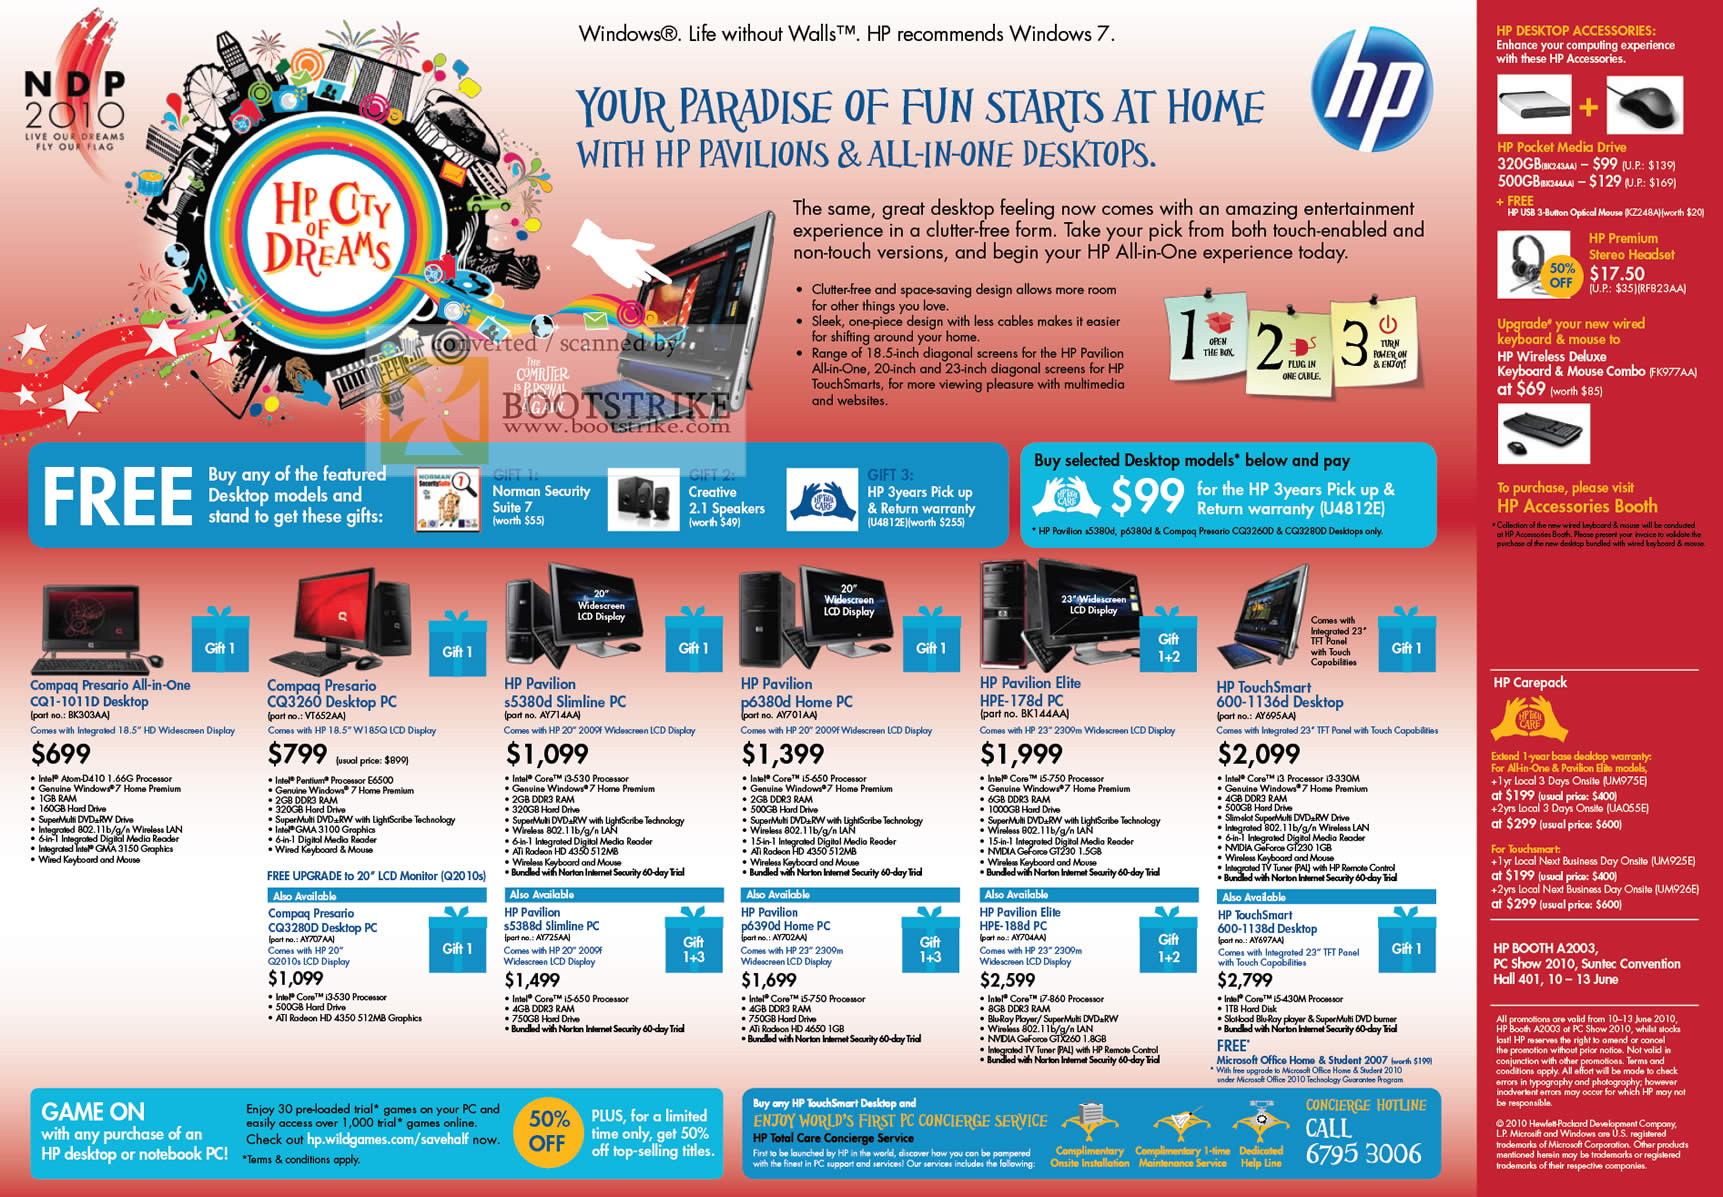 PC Show 2010 price list image brochure of HP Compaq Presario Desktop CQ1 1011D CQ3260 S5380d Slimline PC P6380d Elite Hpe 178d TouchSmart 600 1136d